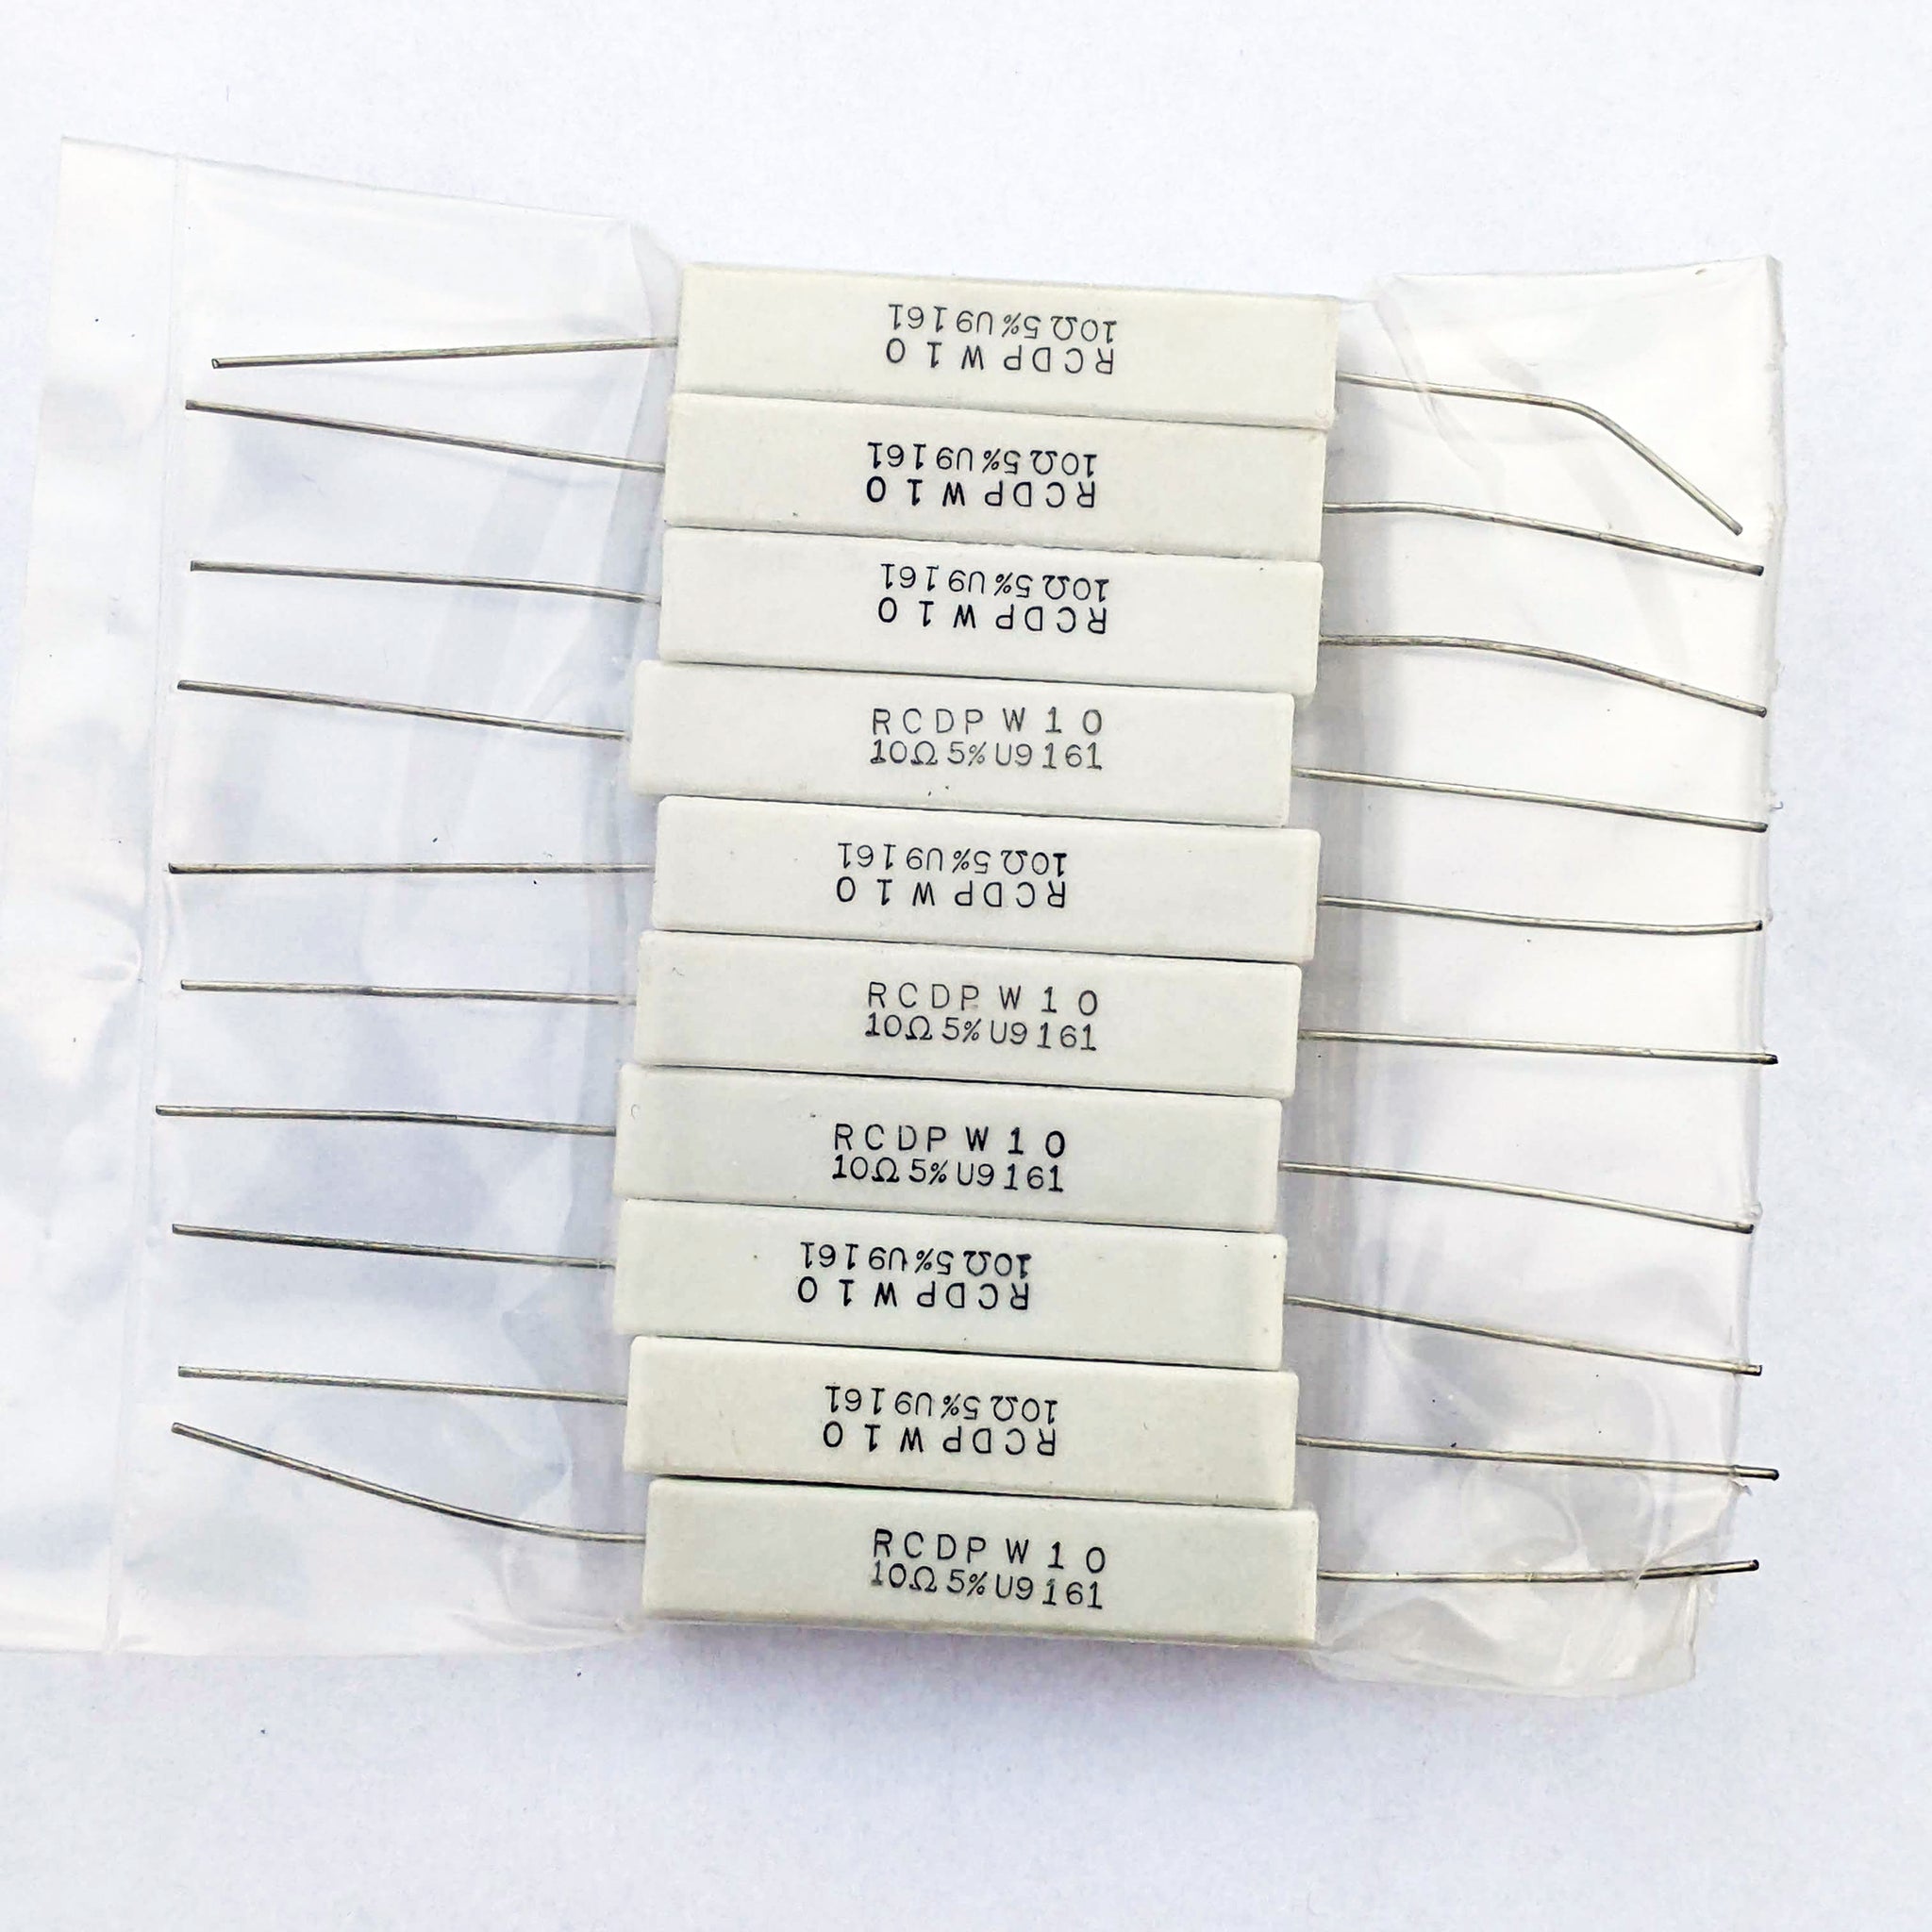 Ceramic Resistors, RCDP W10 10 ohm, 5%, Bag of 10 (New)